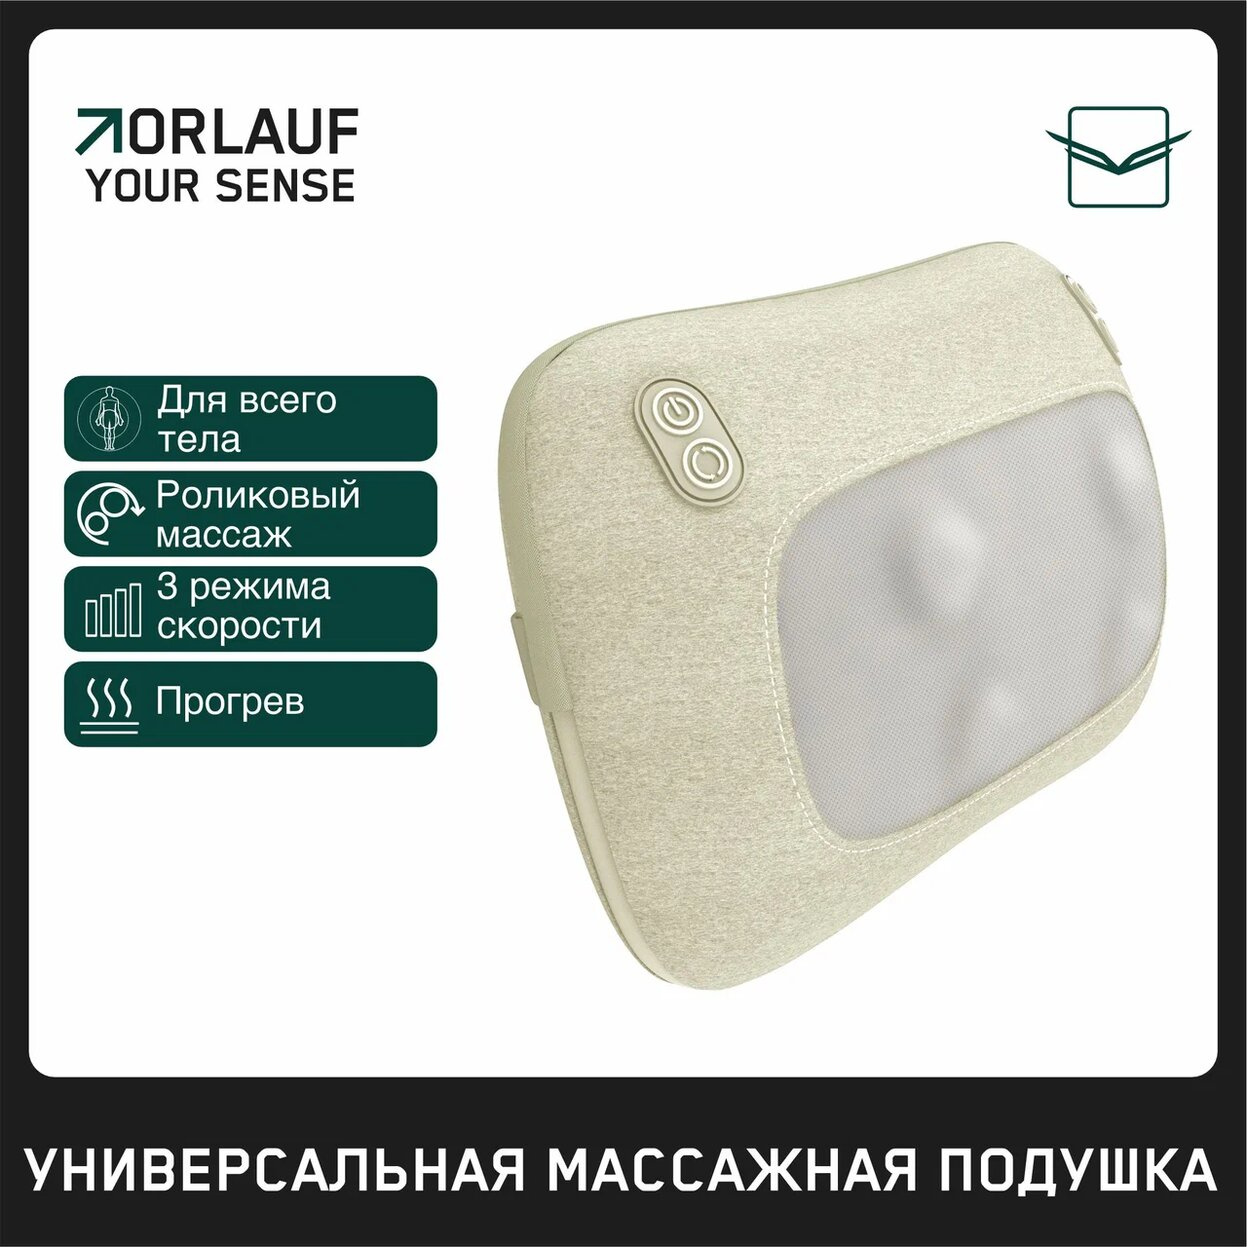 Your Sense в Омске по цене 9400 ₽ в категории портативные массажеры Orlauf